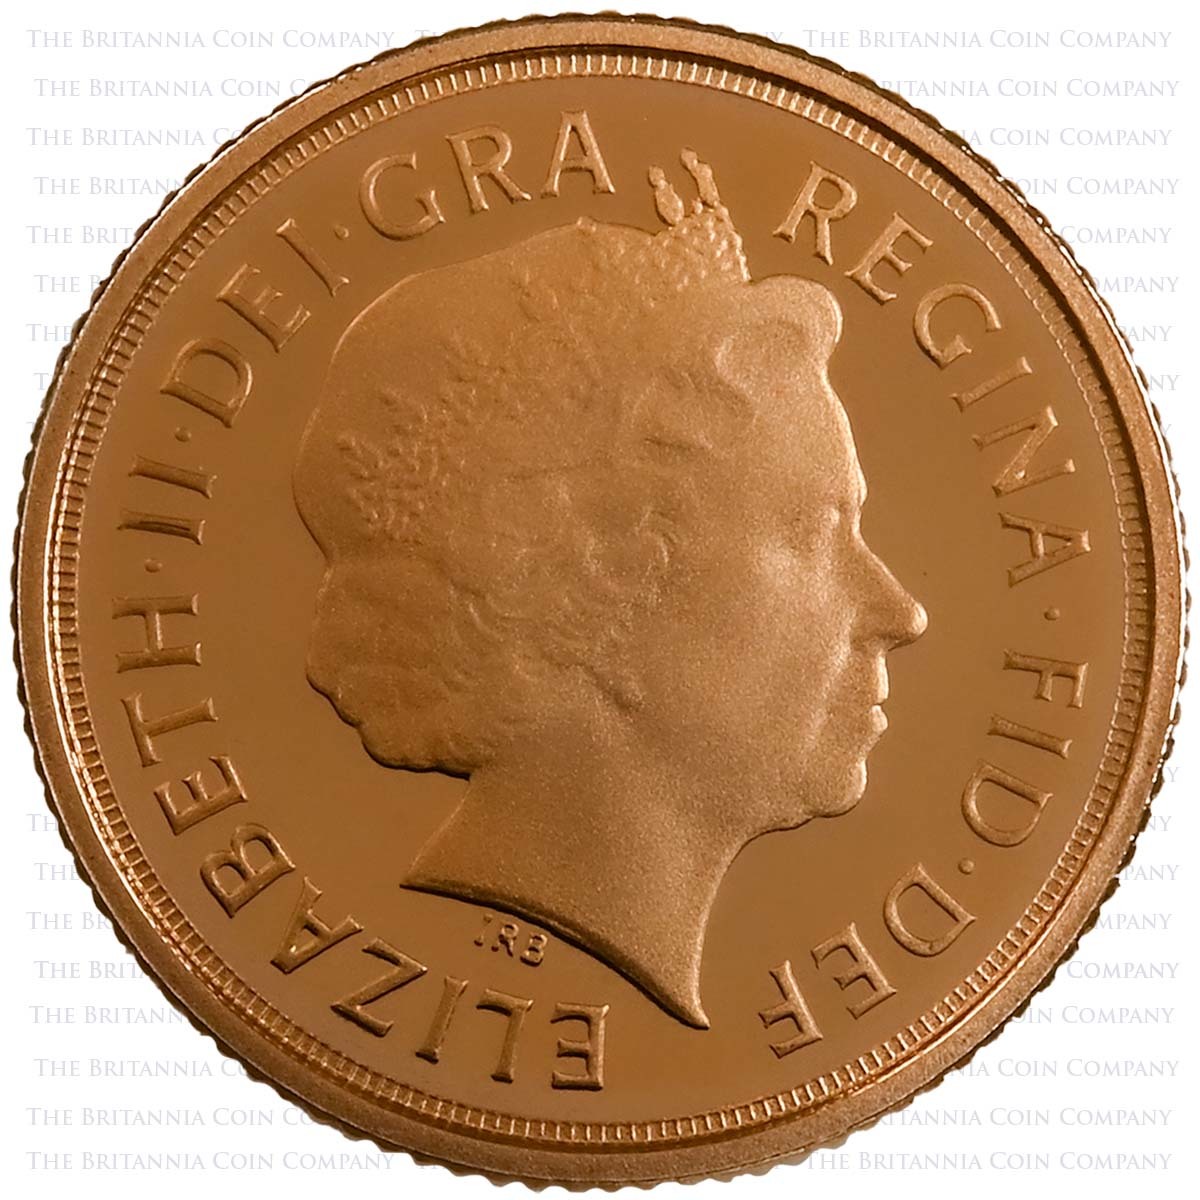 2015 Elizabeth II Gold Proof Quarter Sovereign Rank-Broadley Obverse